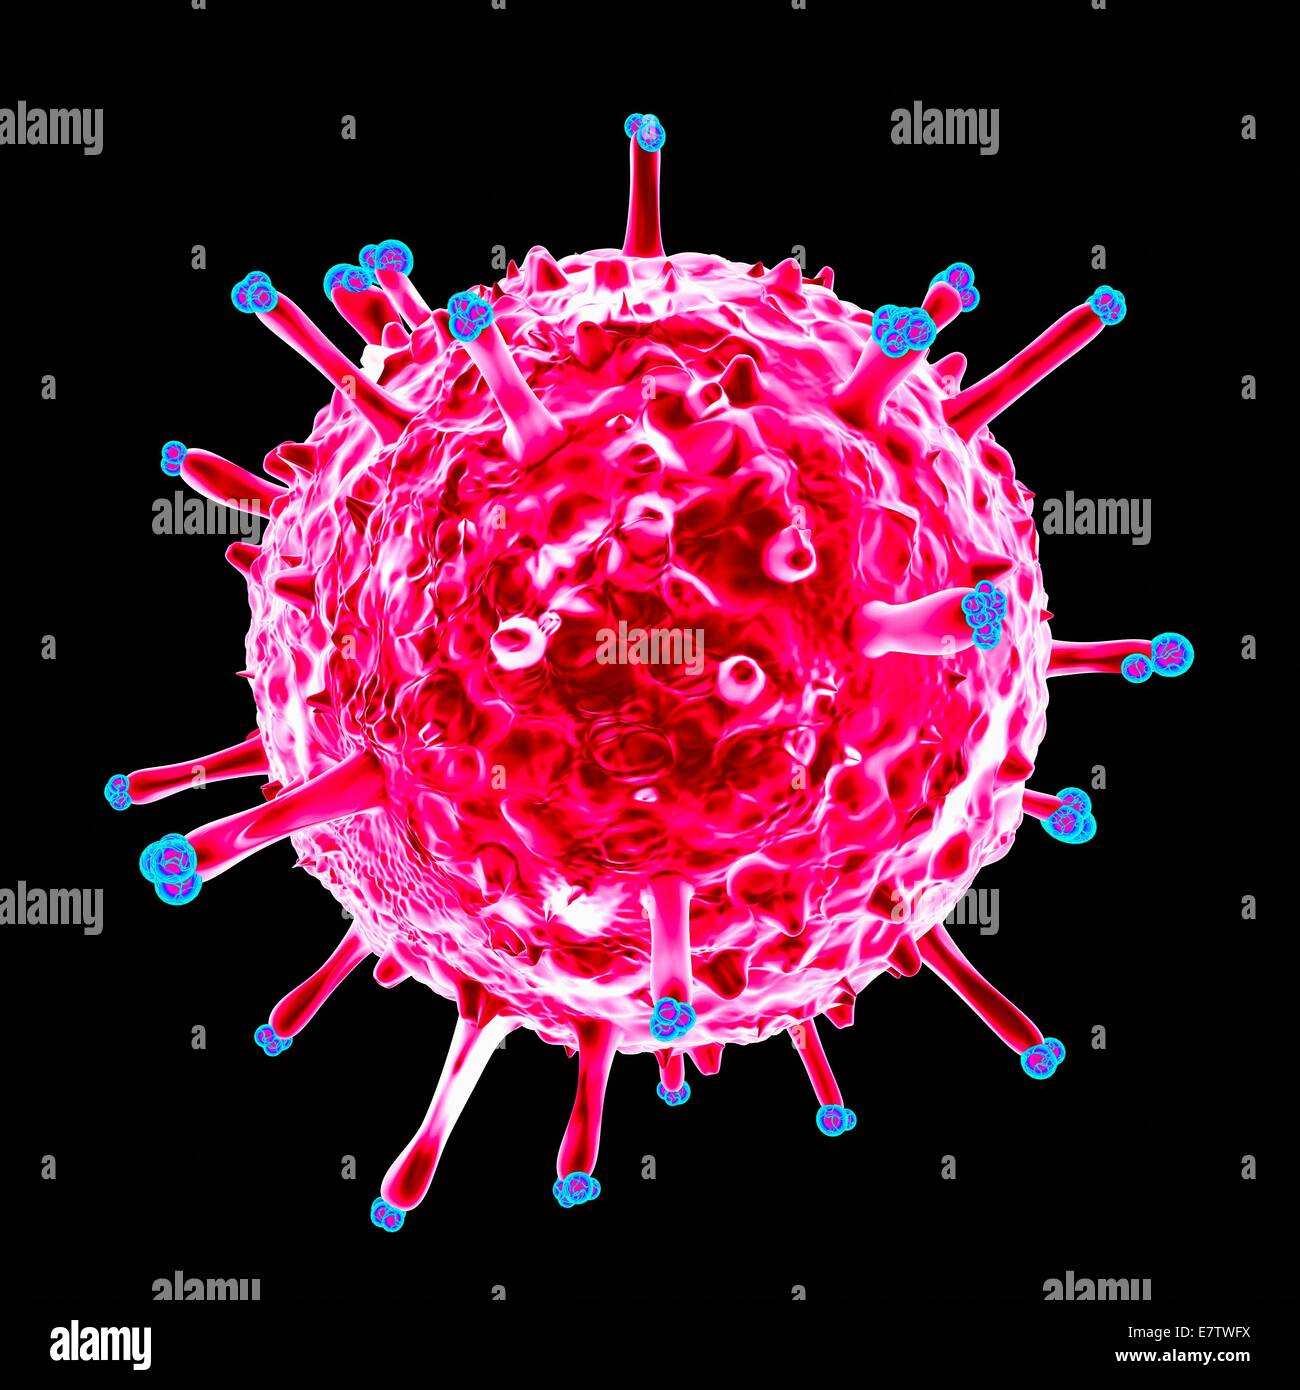 Swine influenza virus, computer artwork. Stock Photo